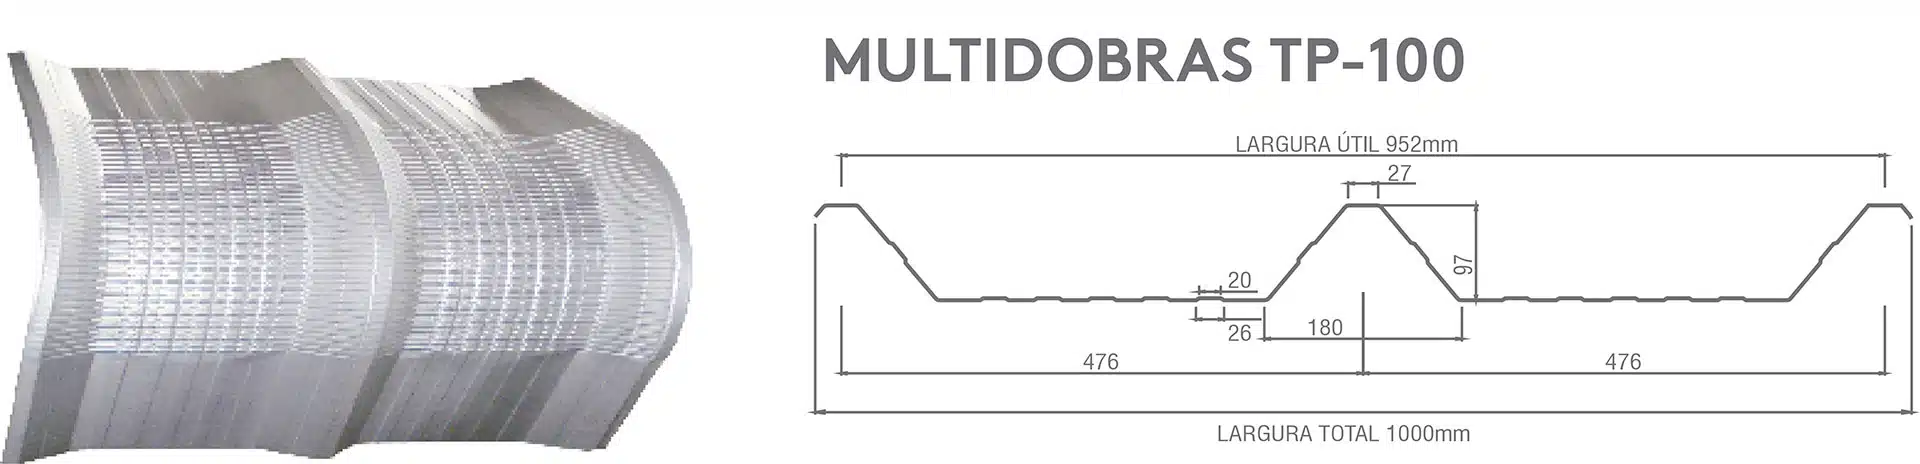 multidobras-tp-100